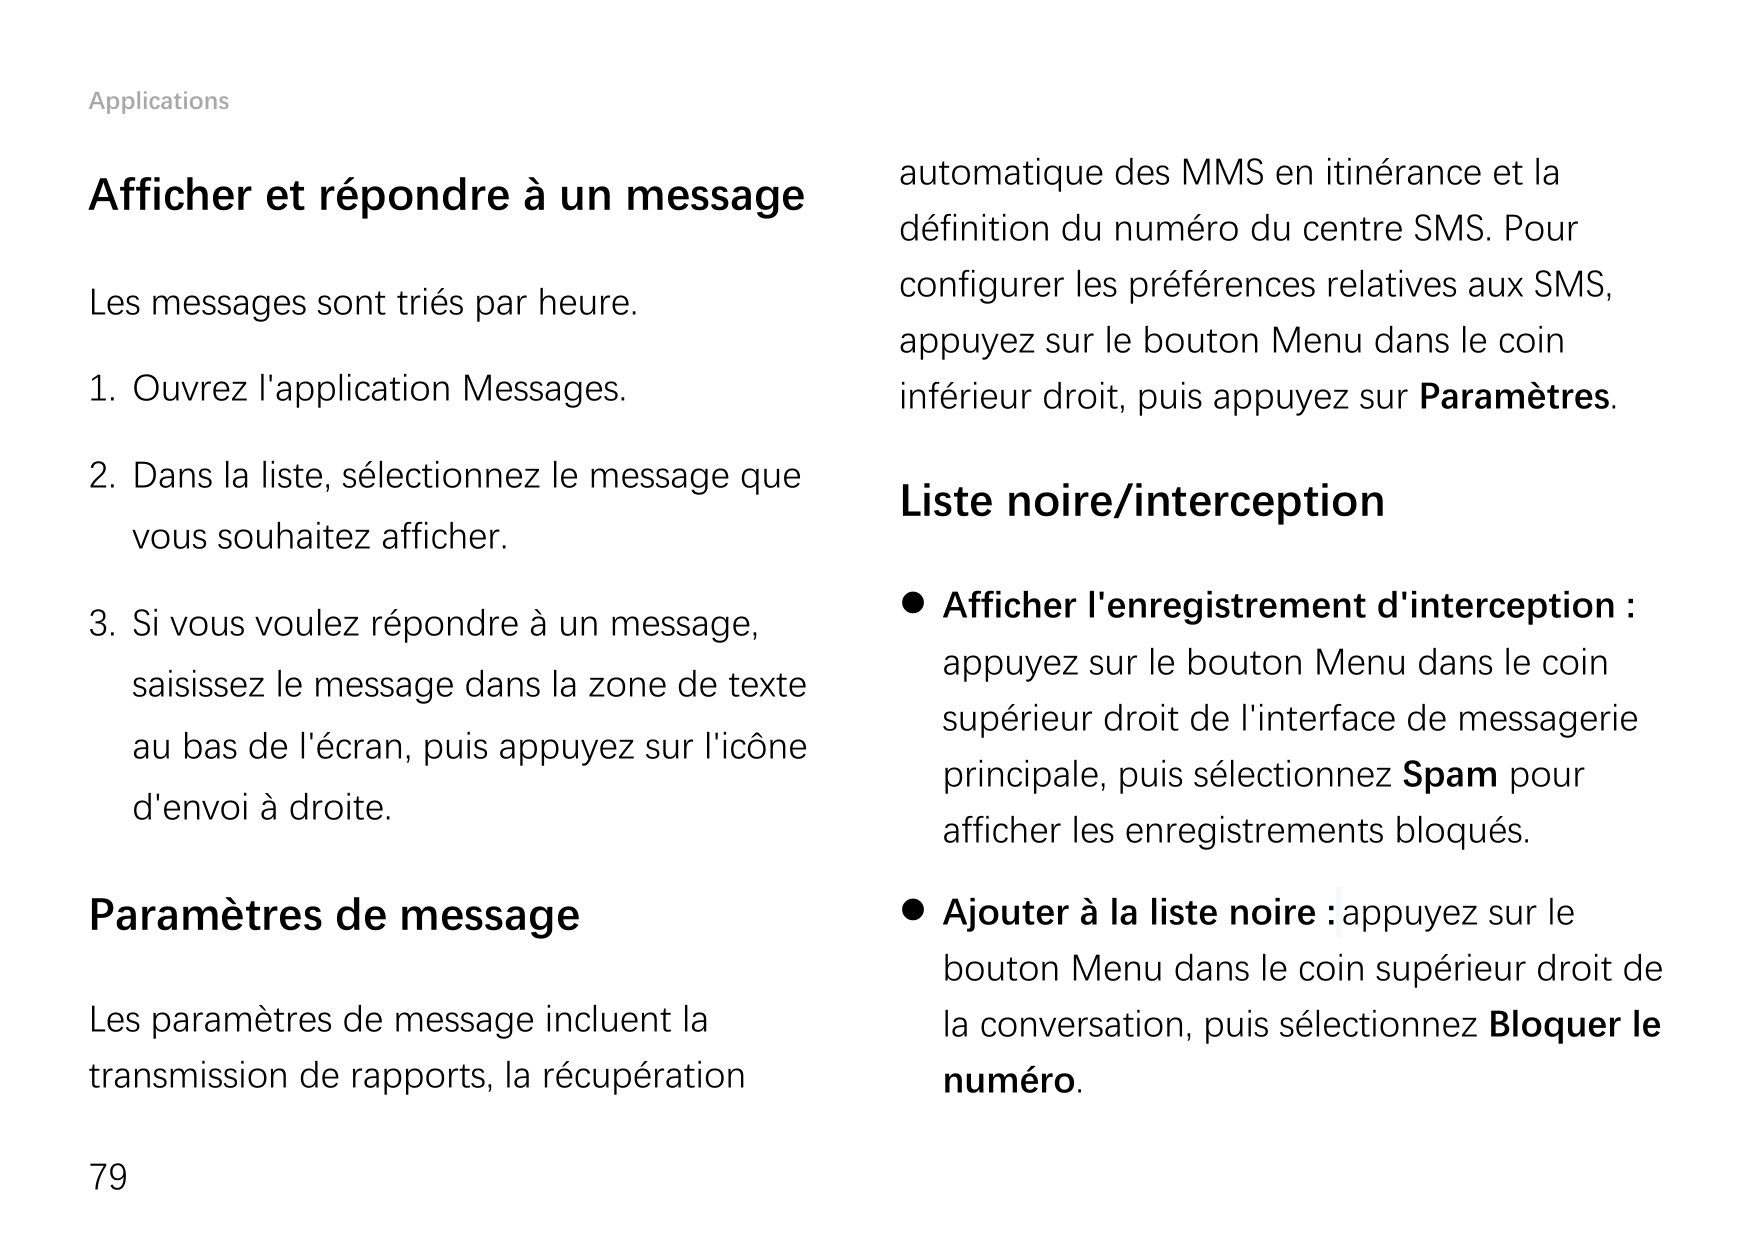 ApplicationsAfficher et répondre à un messageLes messages sont triés par heure.1. Ouvrez l'application Messages.2. Dans la liste